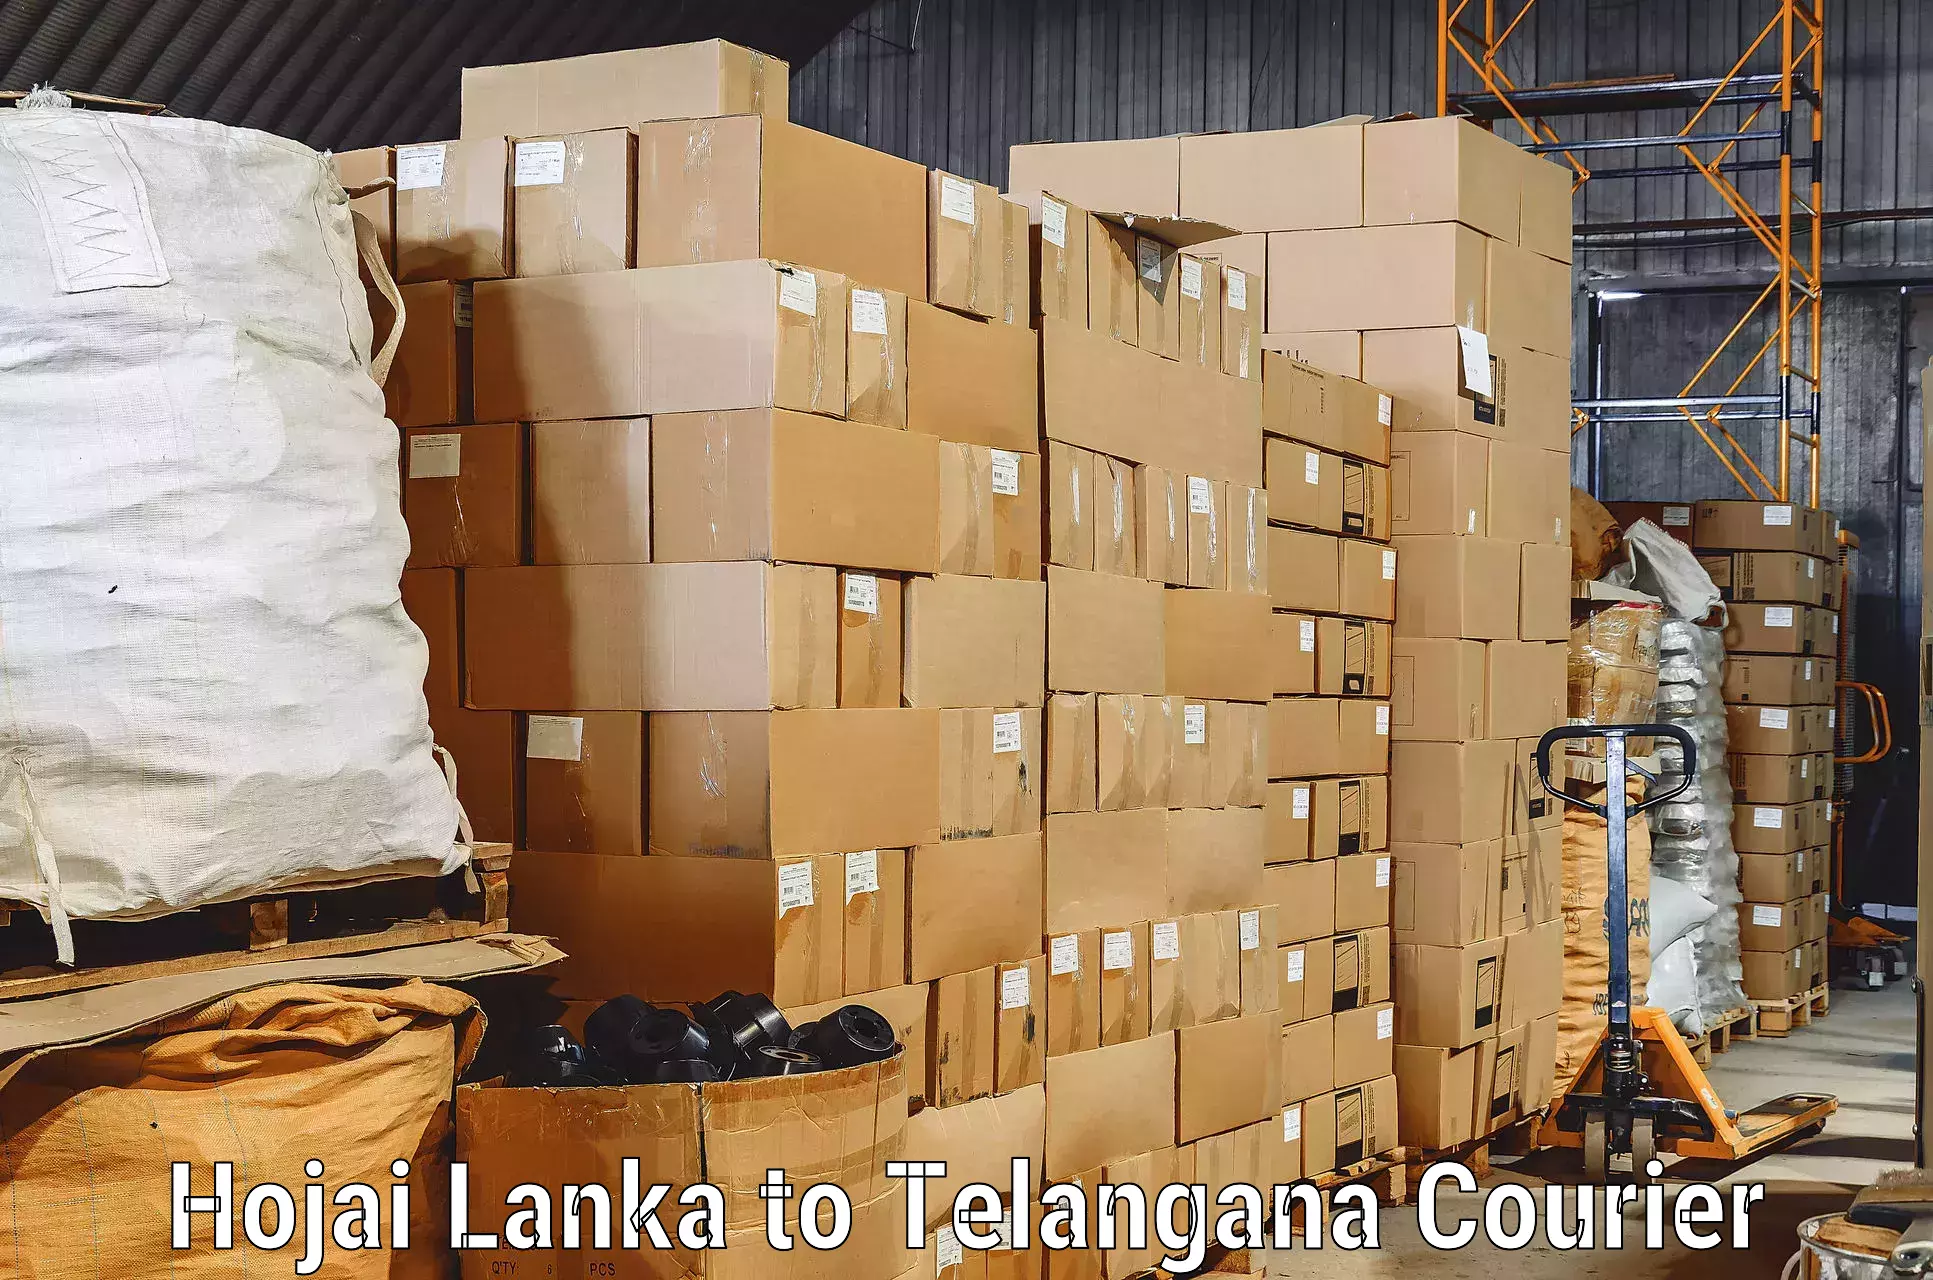 Household goods transport Hojai Lanka to Bhuvanagiri